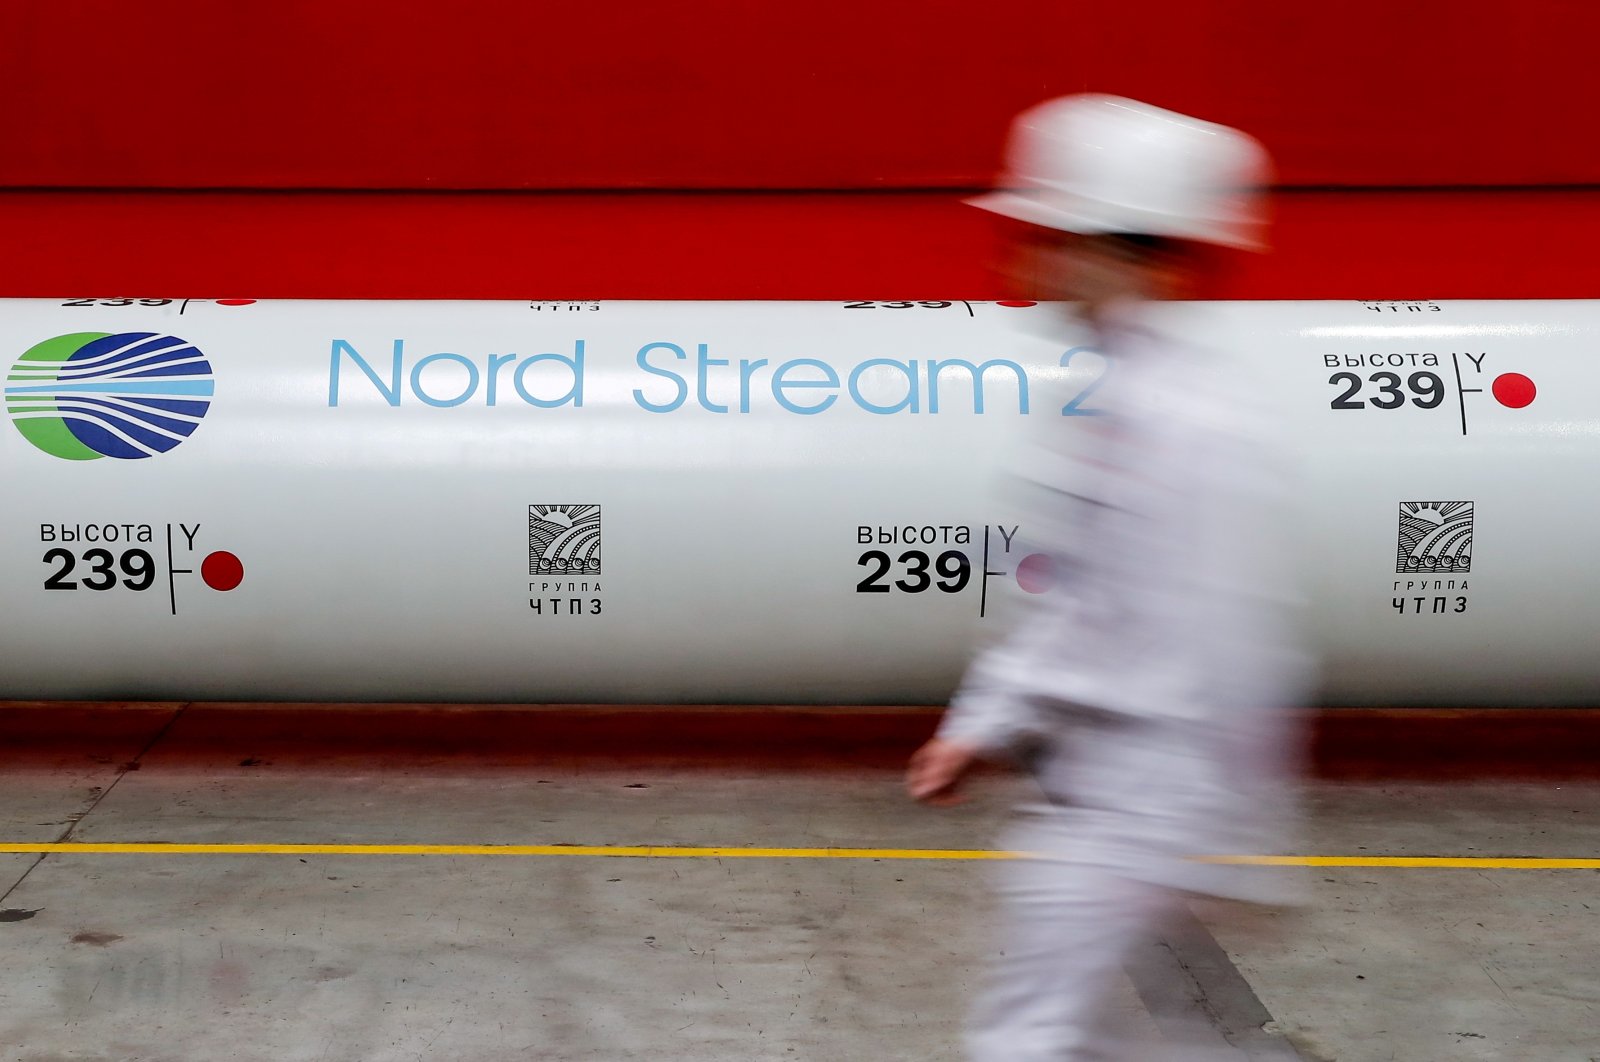 Otoritas Jerman menghentikan proses sertifikasi untuk Nord Stream 2